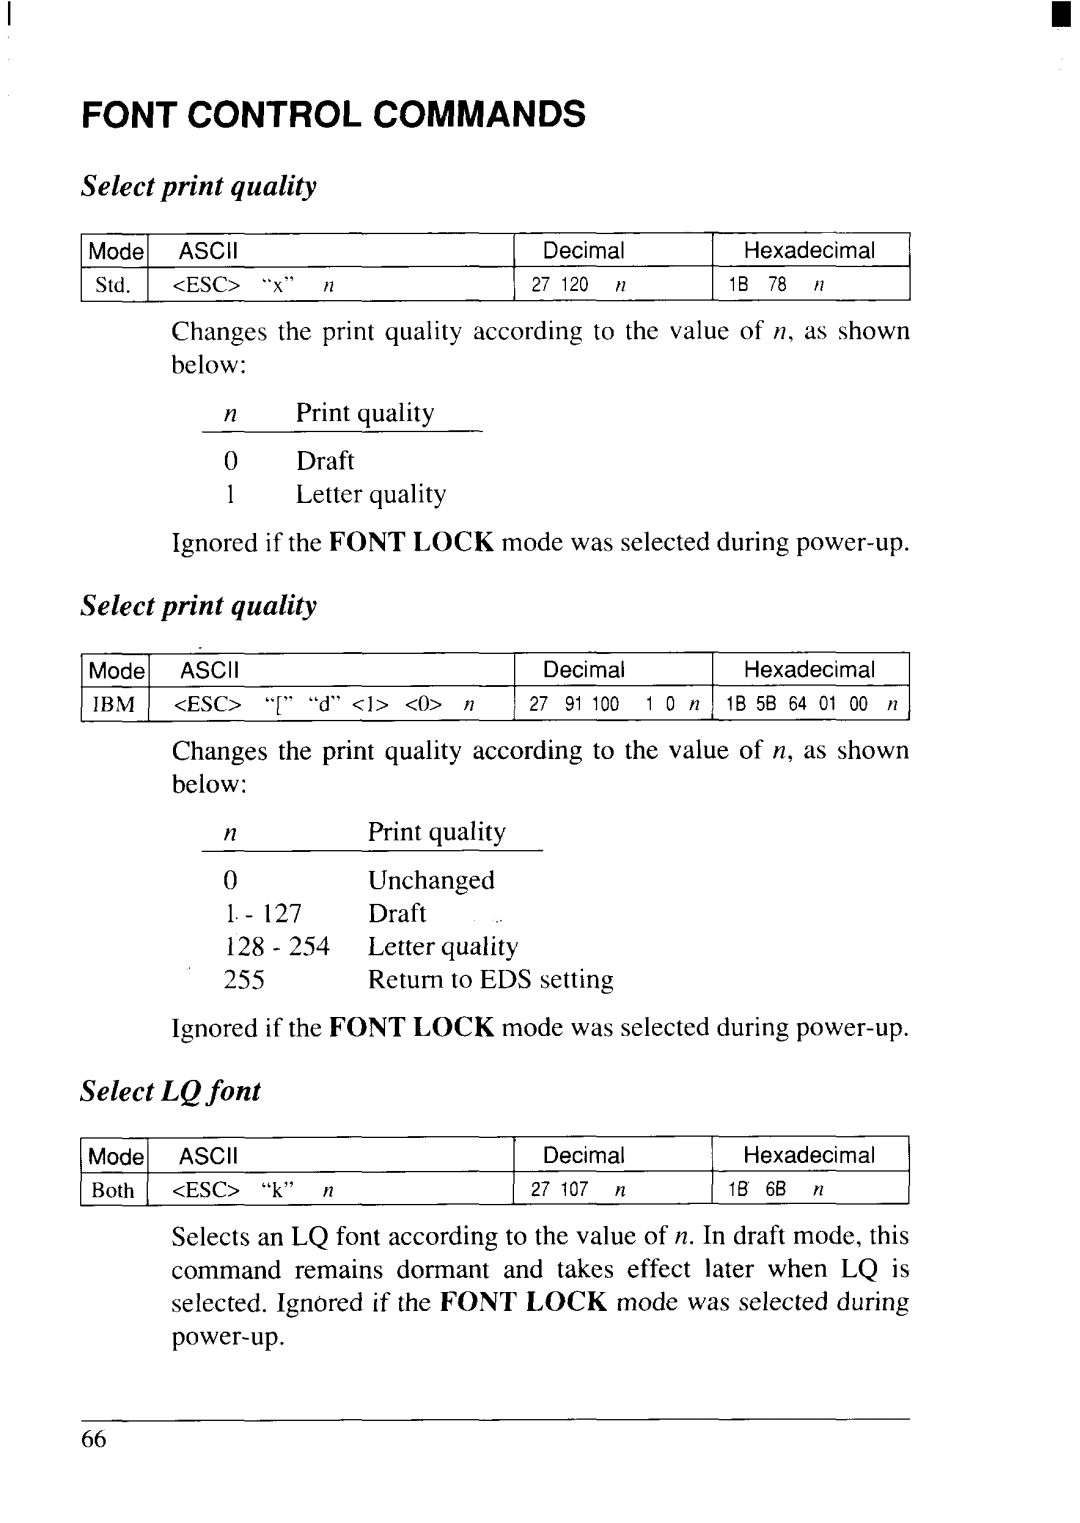 Star Micronics NX-2415II Font Control Commands, Select print quality, Select LQfont, ESC “” ‘cd” 1 0 n, 27 91, Both 